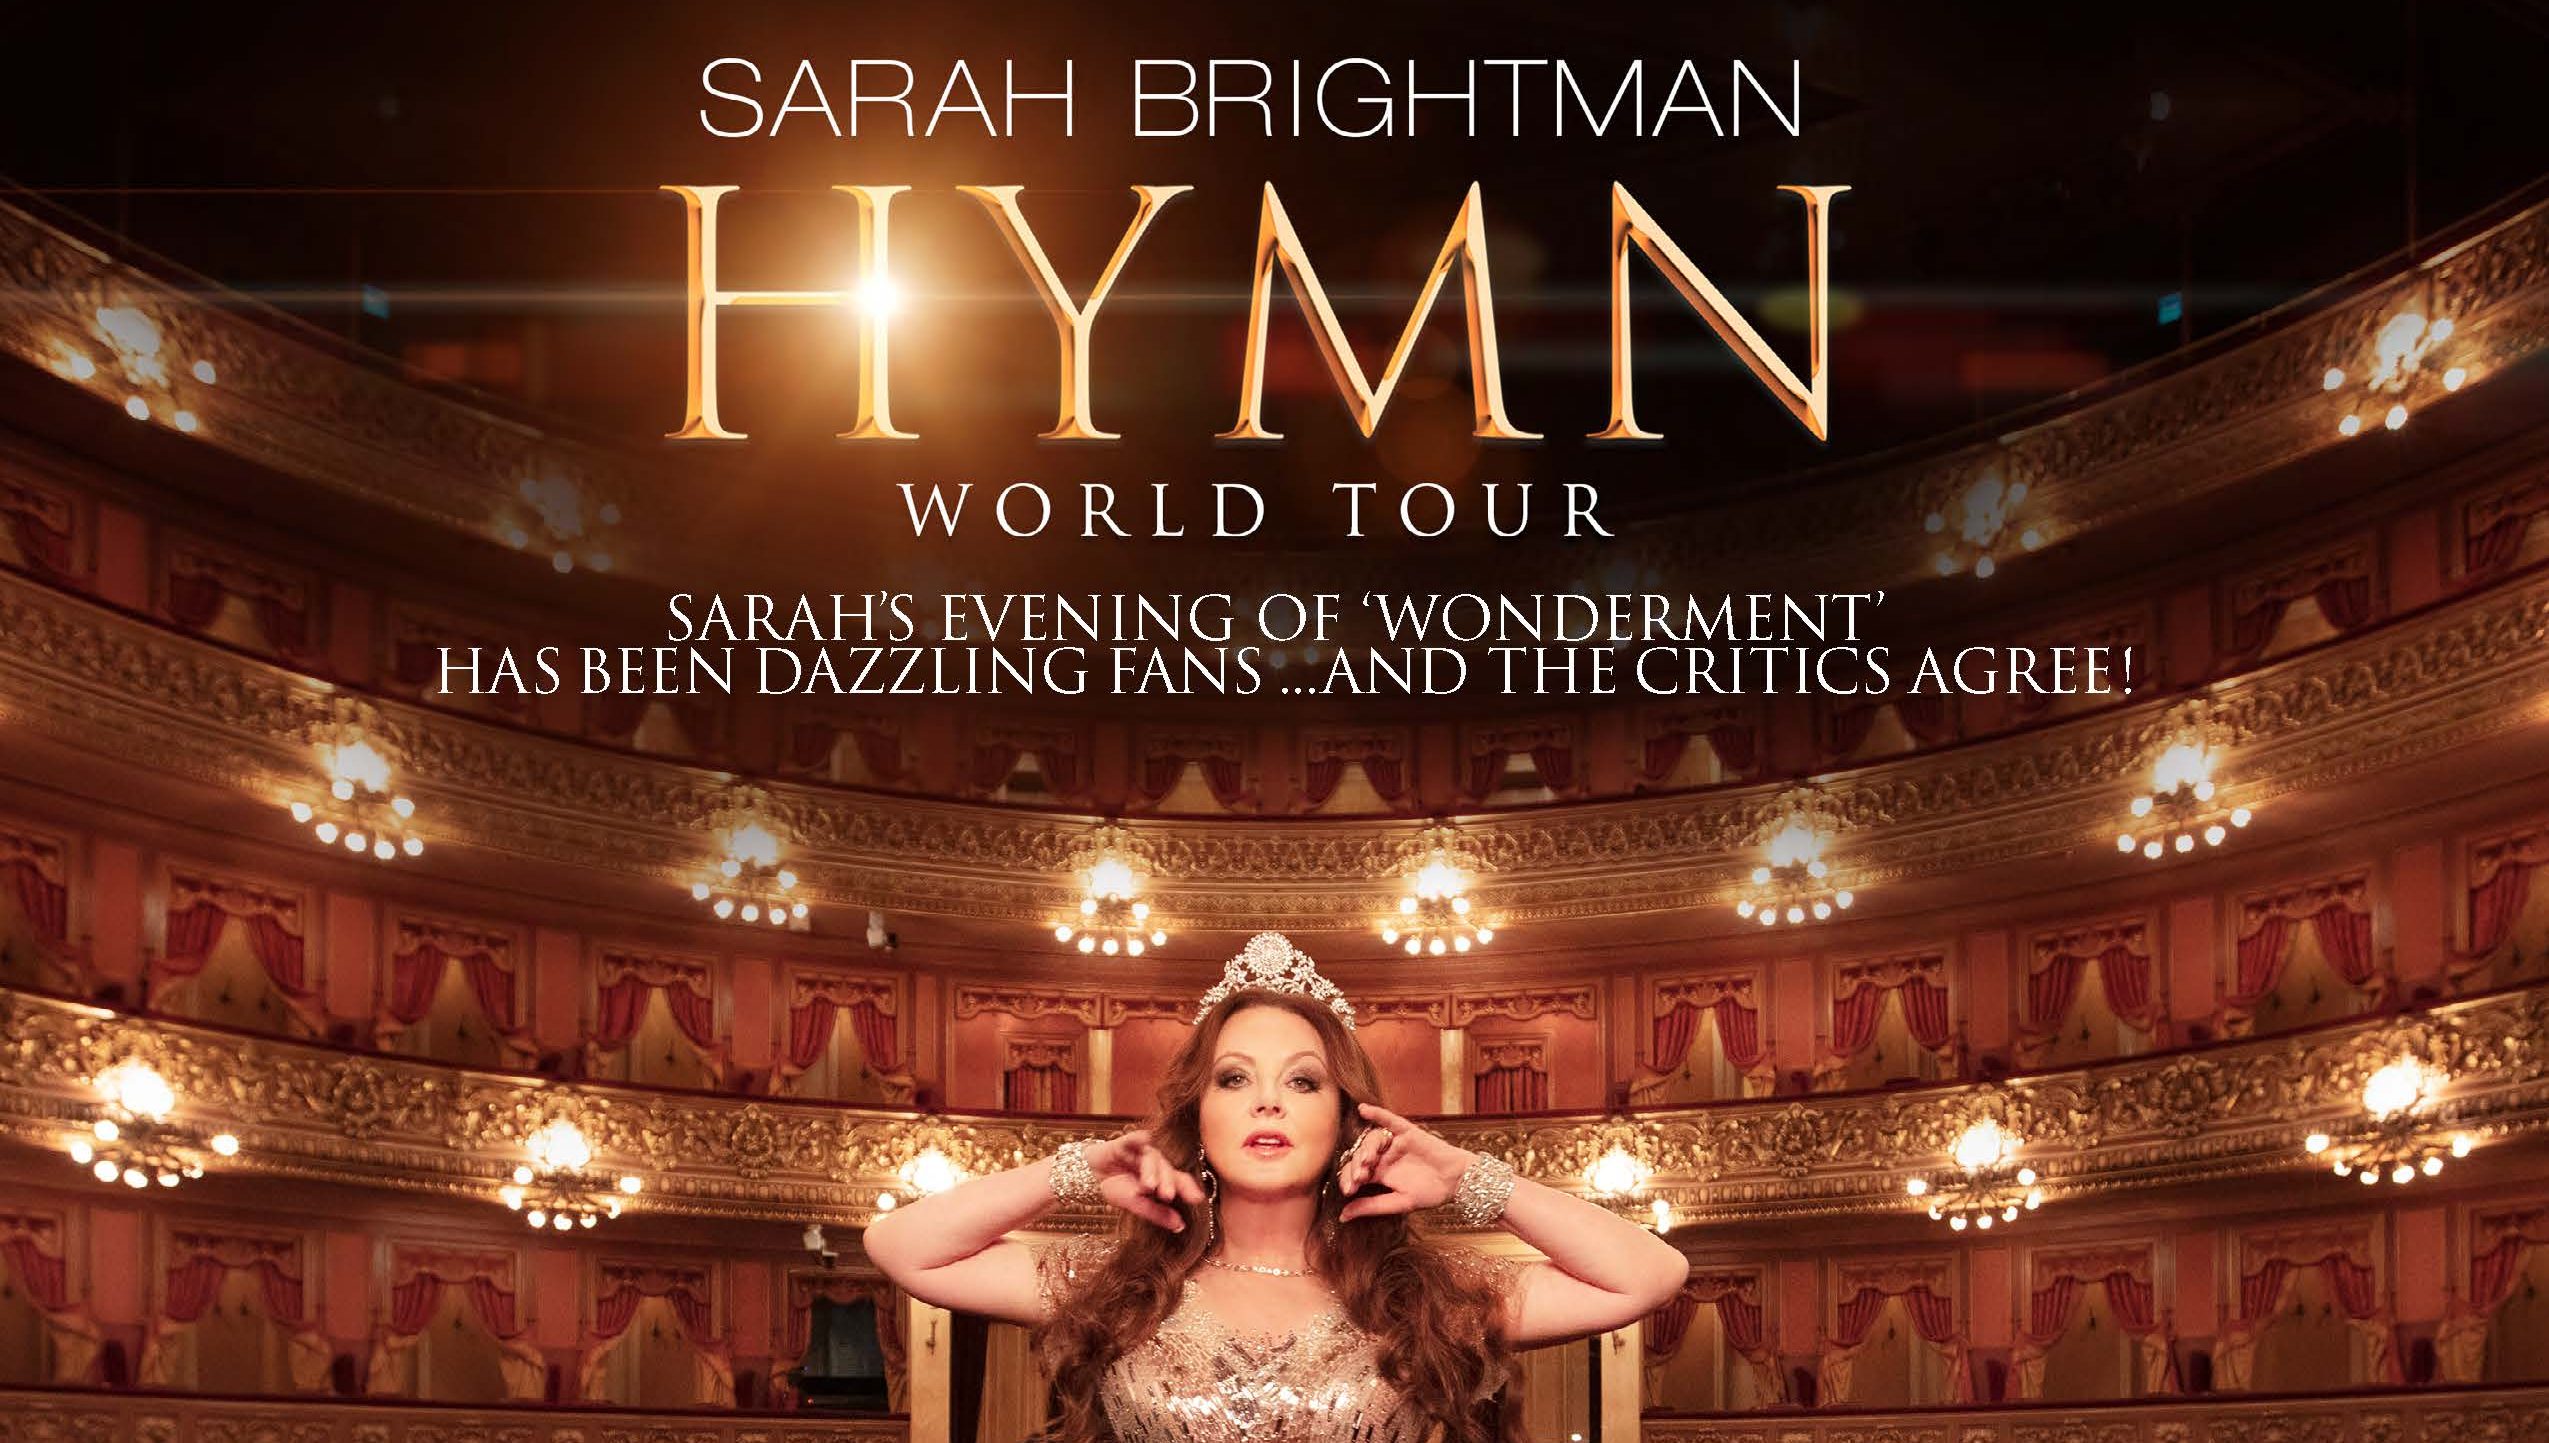 New HYMN World Tour Reviews - Sarah Brightman : Sarah Brightman